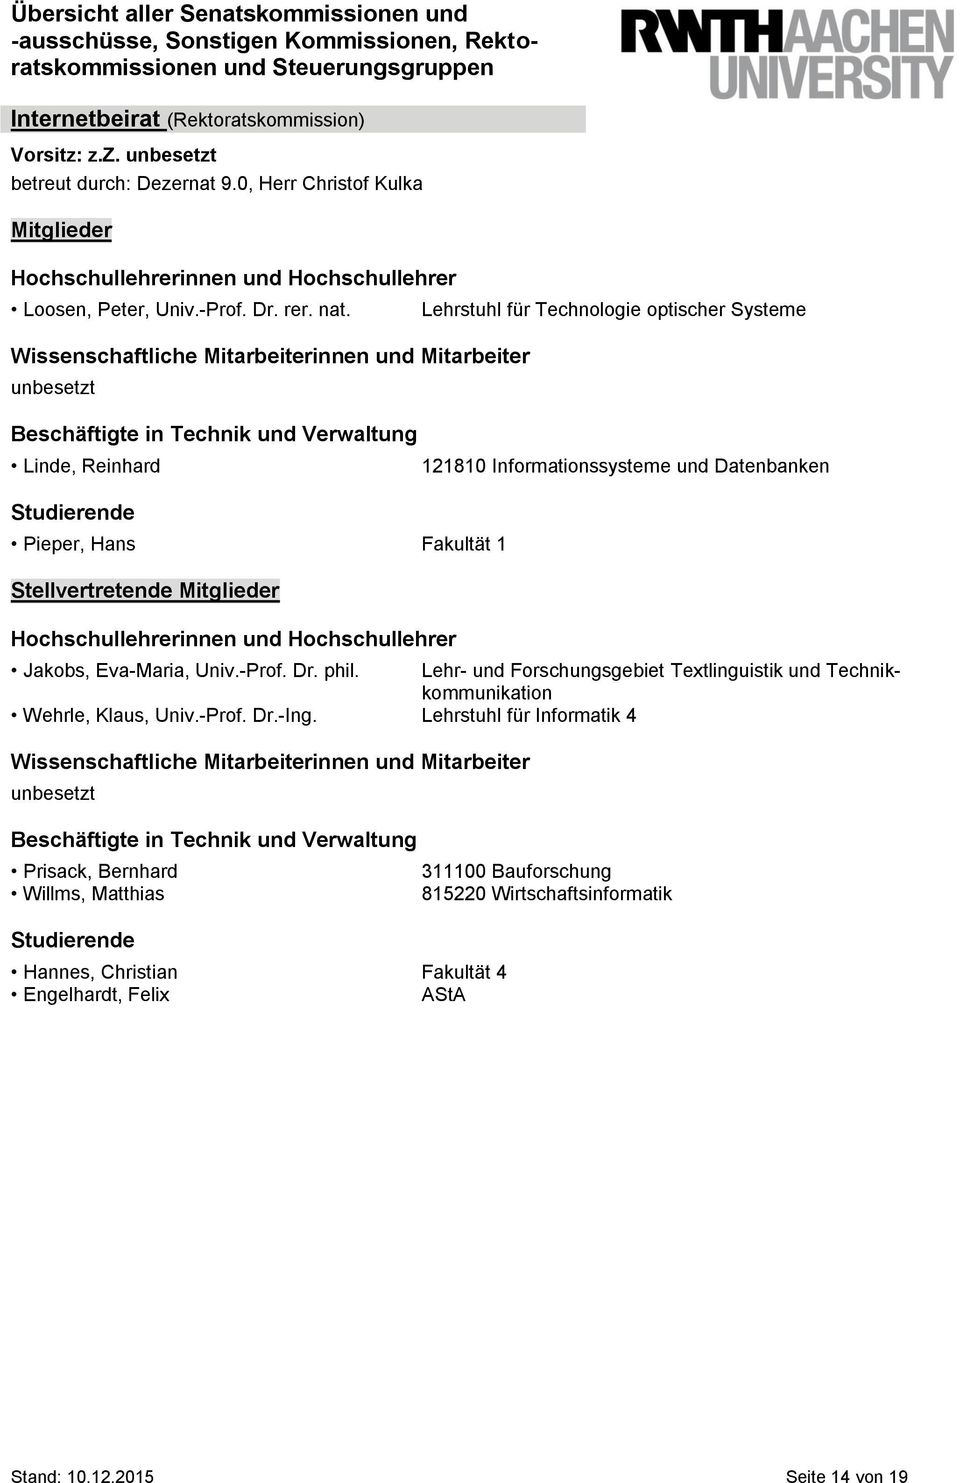 Univ.-Prof. Dr. phil. Lehr- und Forschungsgebiet Textlinguistik und Technikkommunikation Wehrle, Klaus, Univ.-Prof. Dr.-Ing.